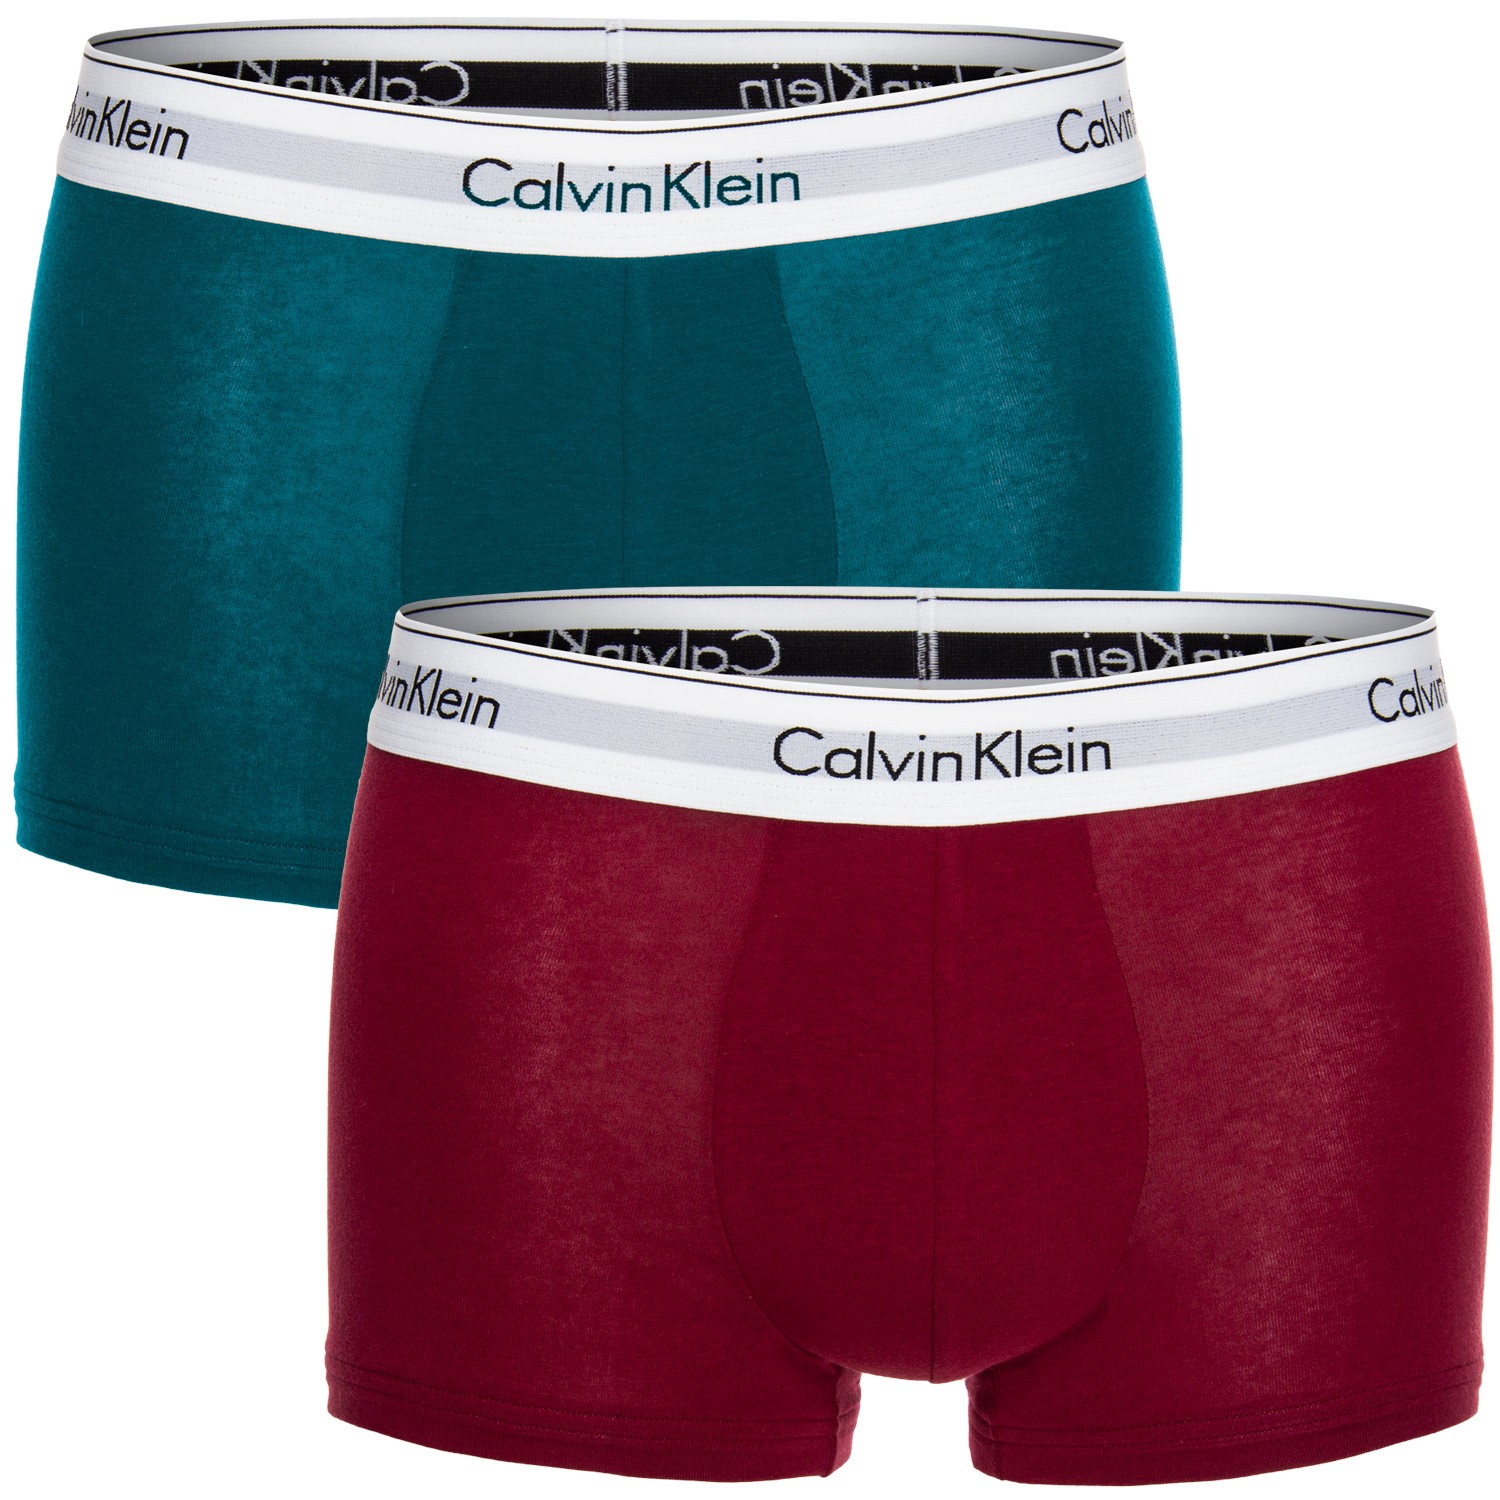 Calvin Klein Holiday Modern Cotton Stretch Trunk